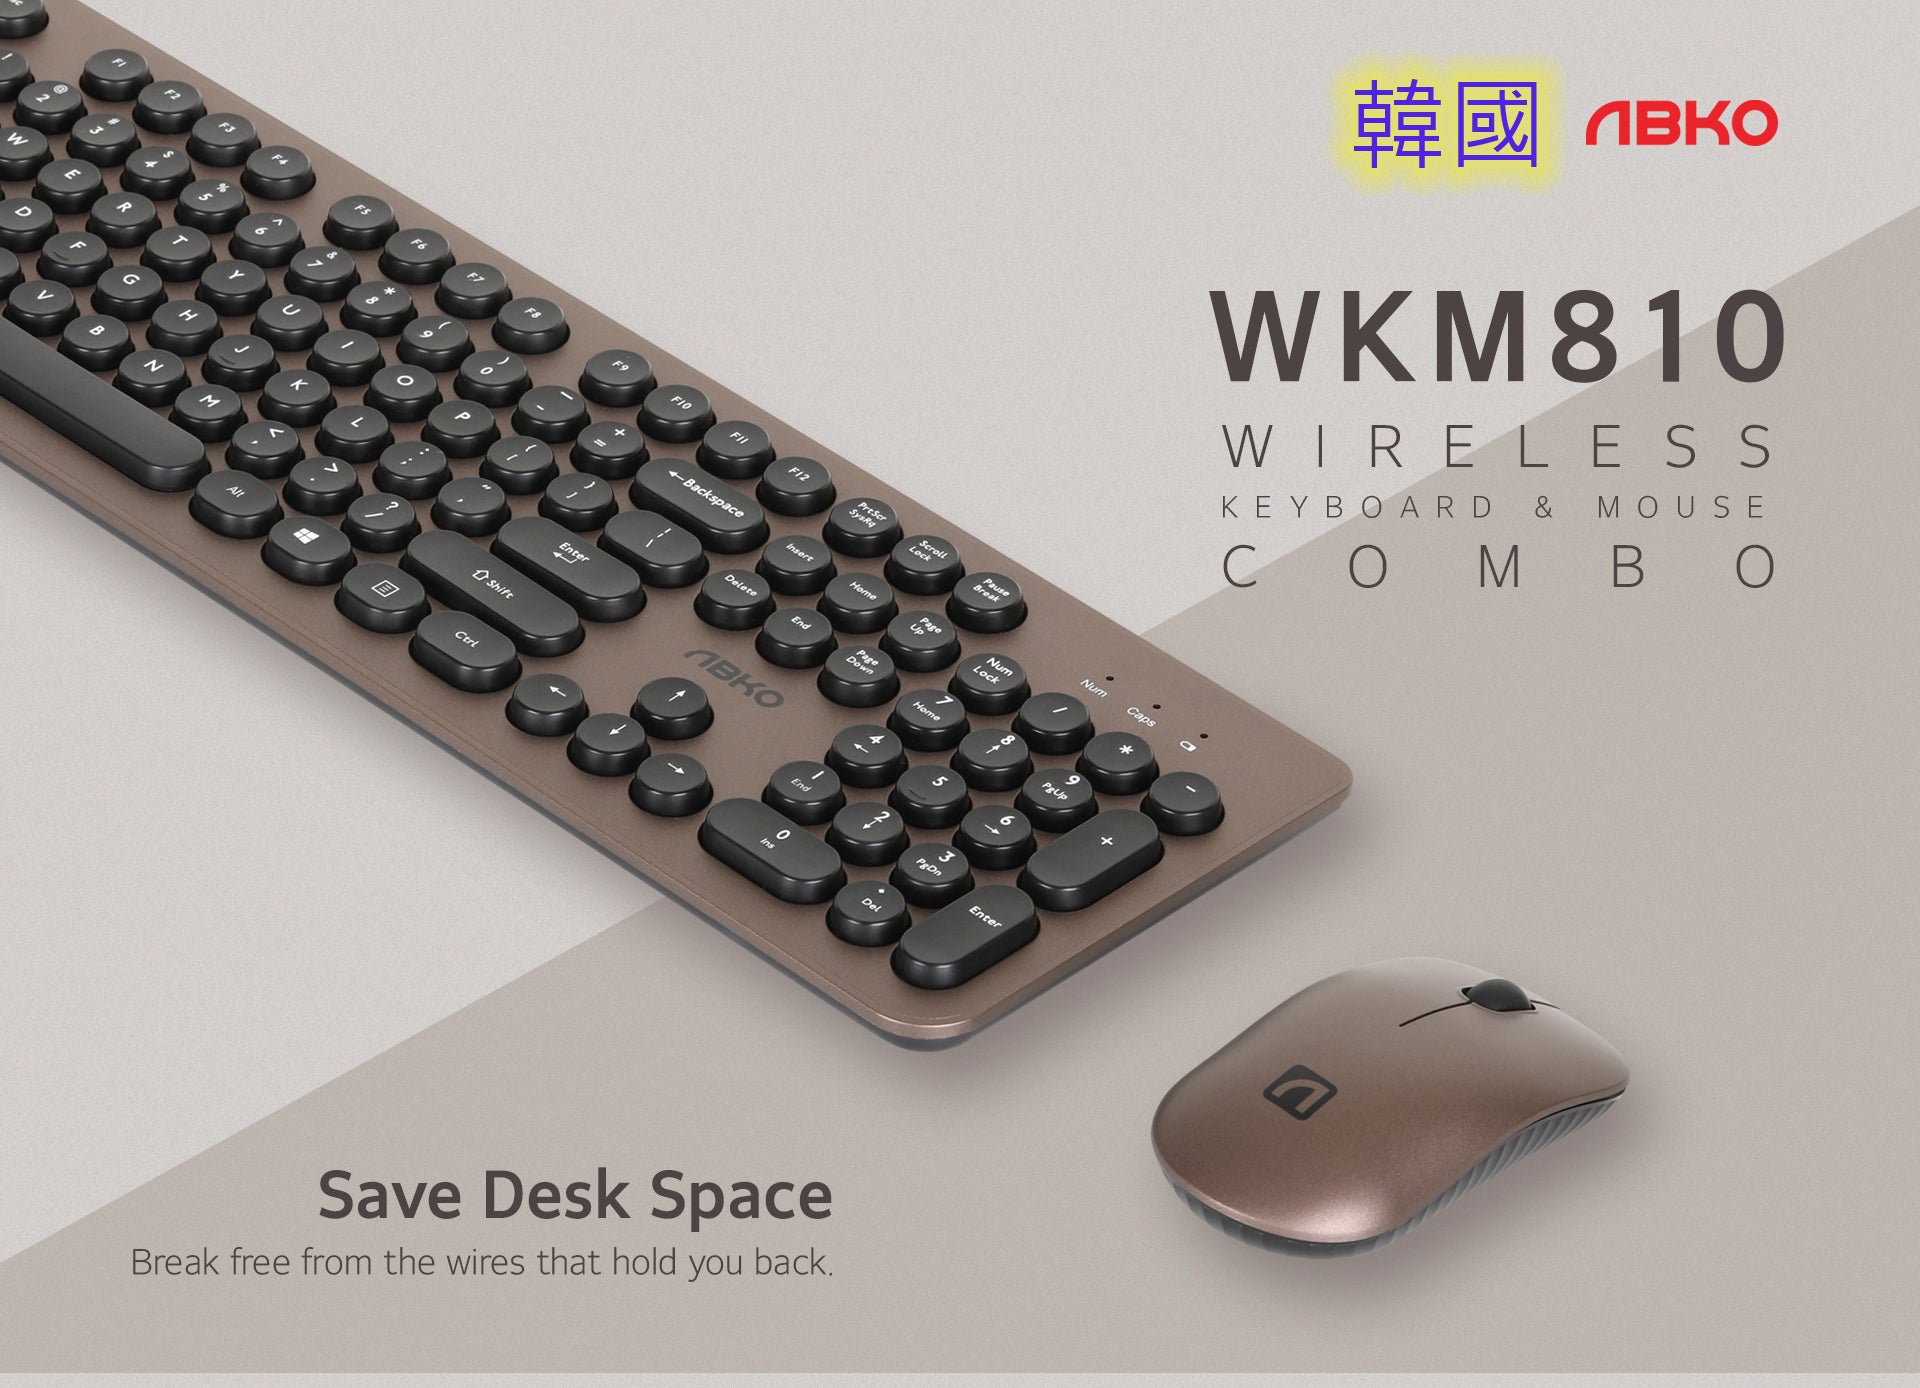 韓國 ABKO WKM810 復古銅色無線鍵盤及滑鼠套裝 2.4GHz Wireless Keyboard Mouse Combo Set